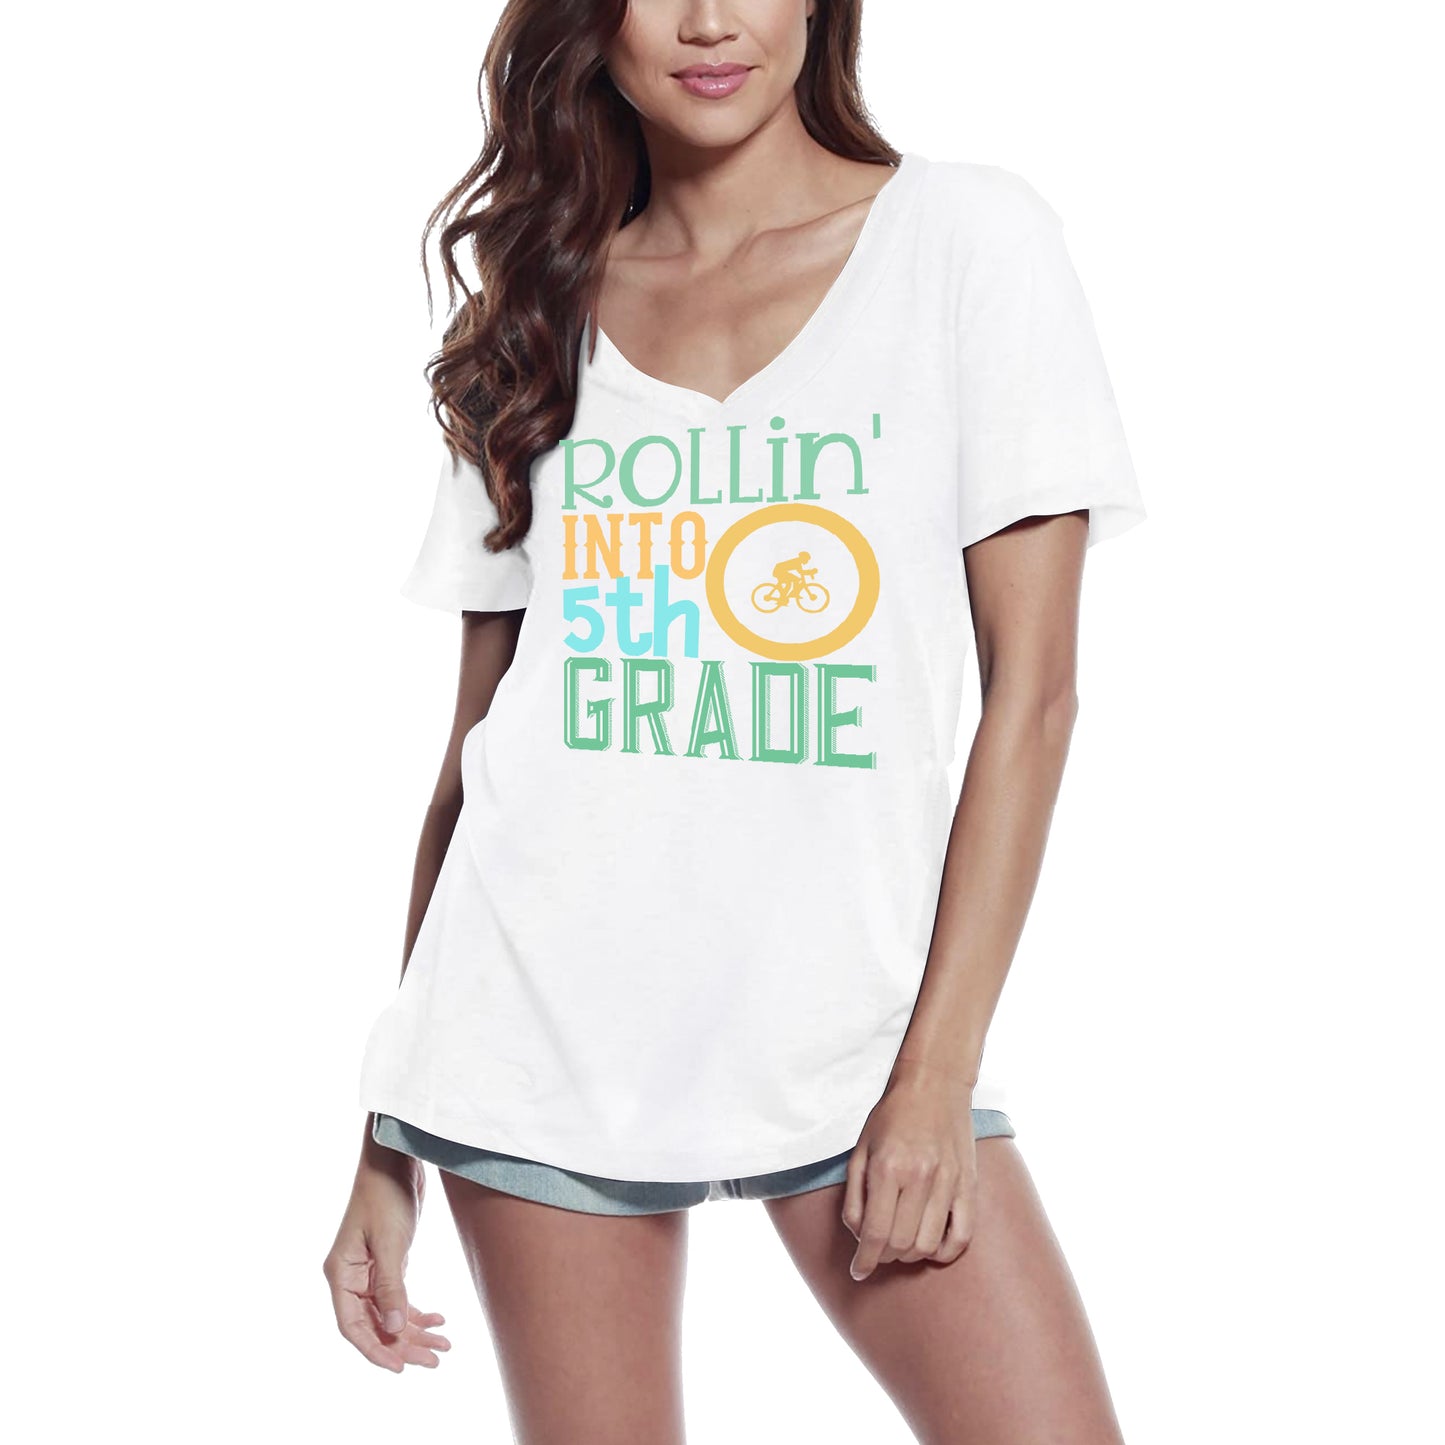 ULTRABASIC Women's T-Shirt Rollin' Into 5th Grade - Short Sleeve Tee Shirt Tops